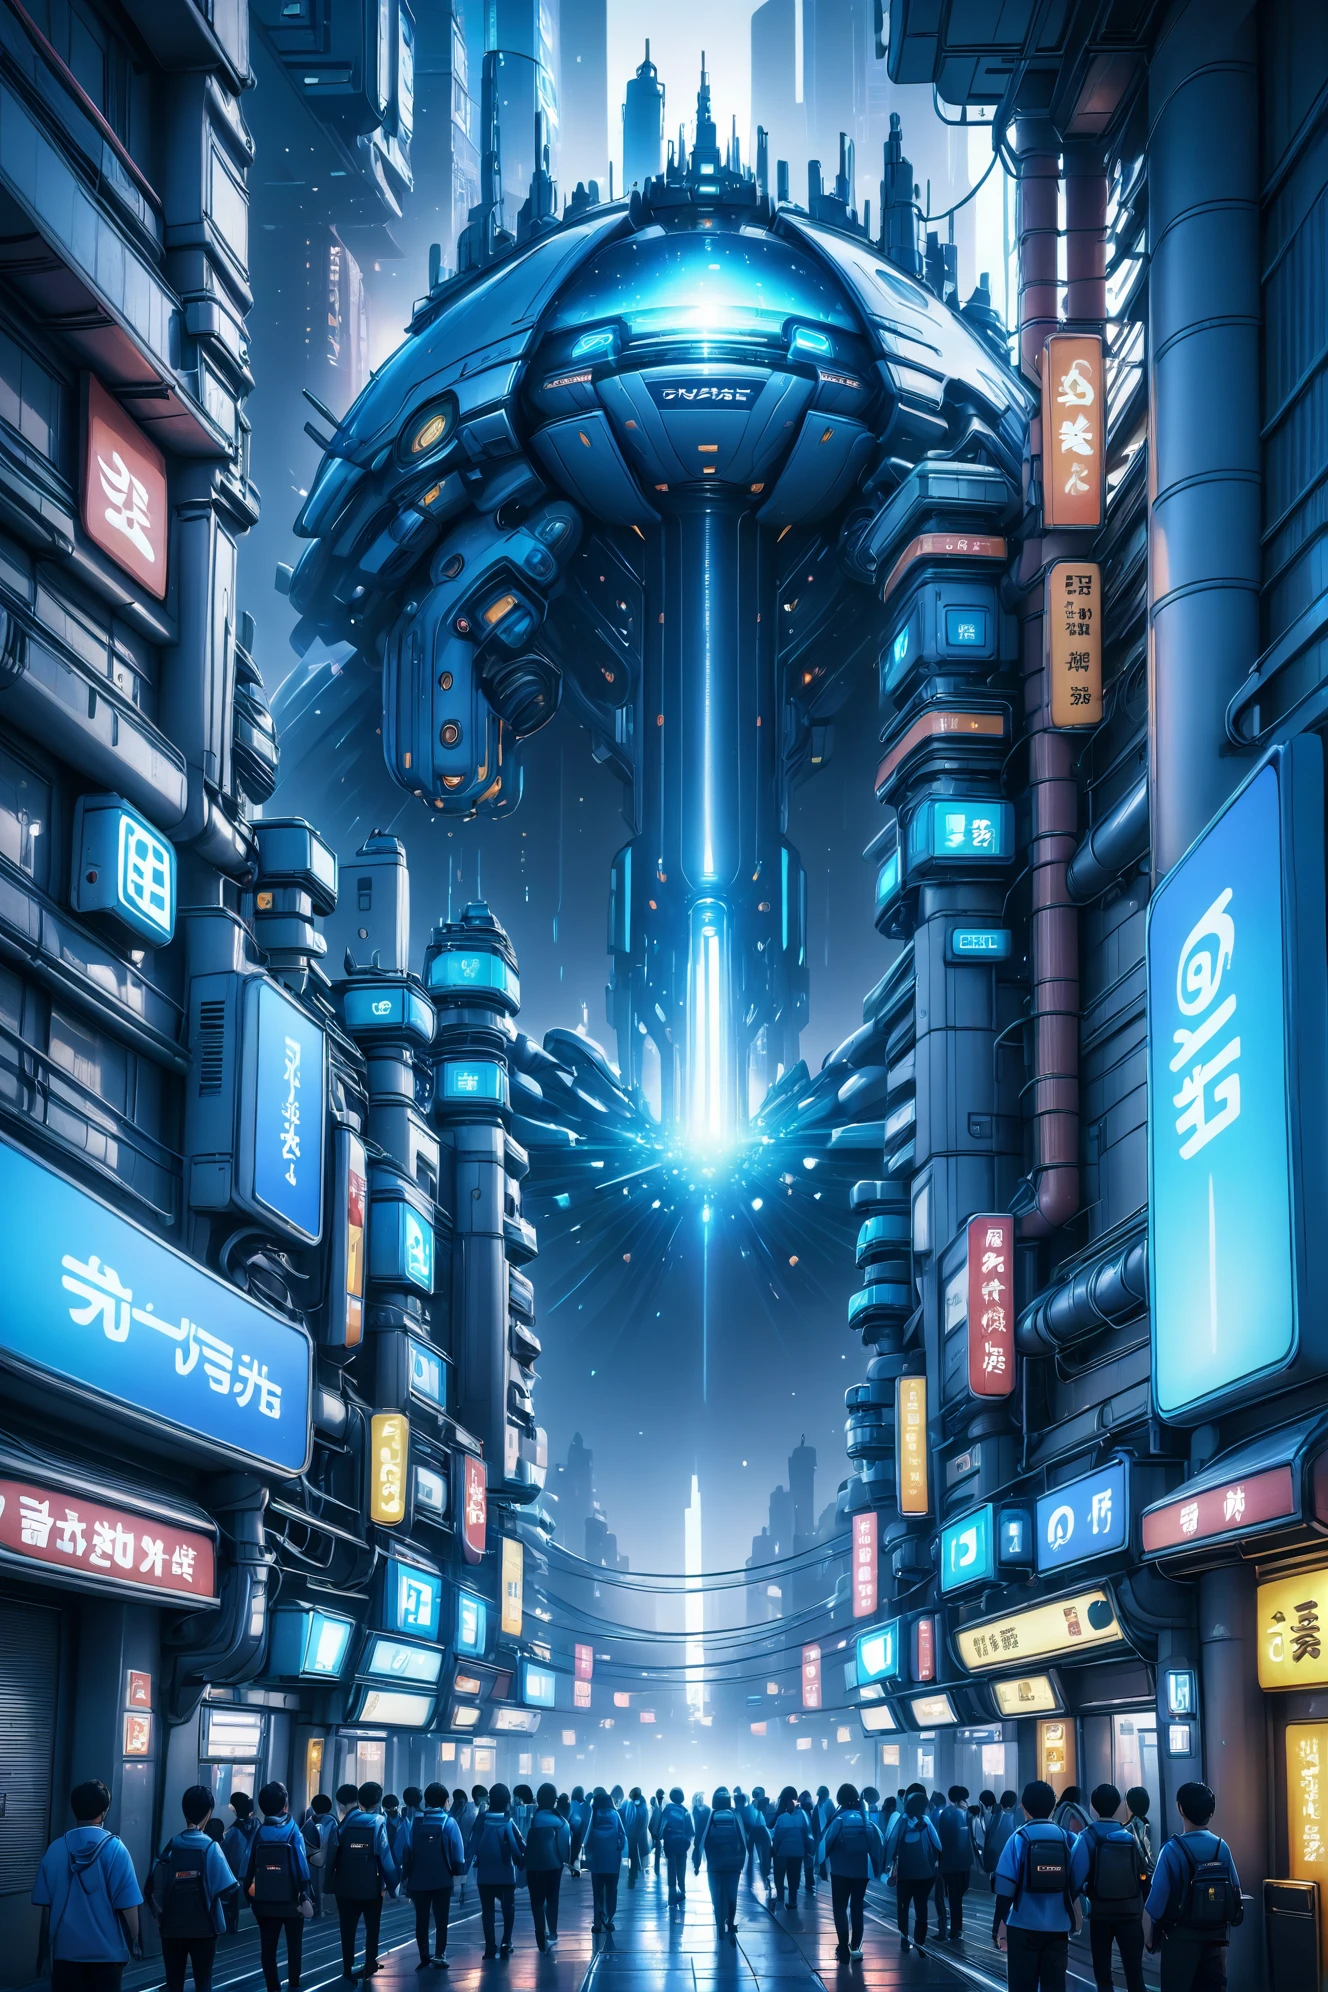 اللوحة الرقمية, عرض CG واقعي للغاية, ضوء أزرق مشع ونظام ألوان زرقاء متناثرة تحت السطح, لانهائي,مدينة خيالية عملاقة في نهاية الكون المتعدد, 8 كيلو, تفاصيل عالية جدًا, (طوكيو الجديدة:1)